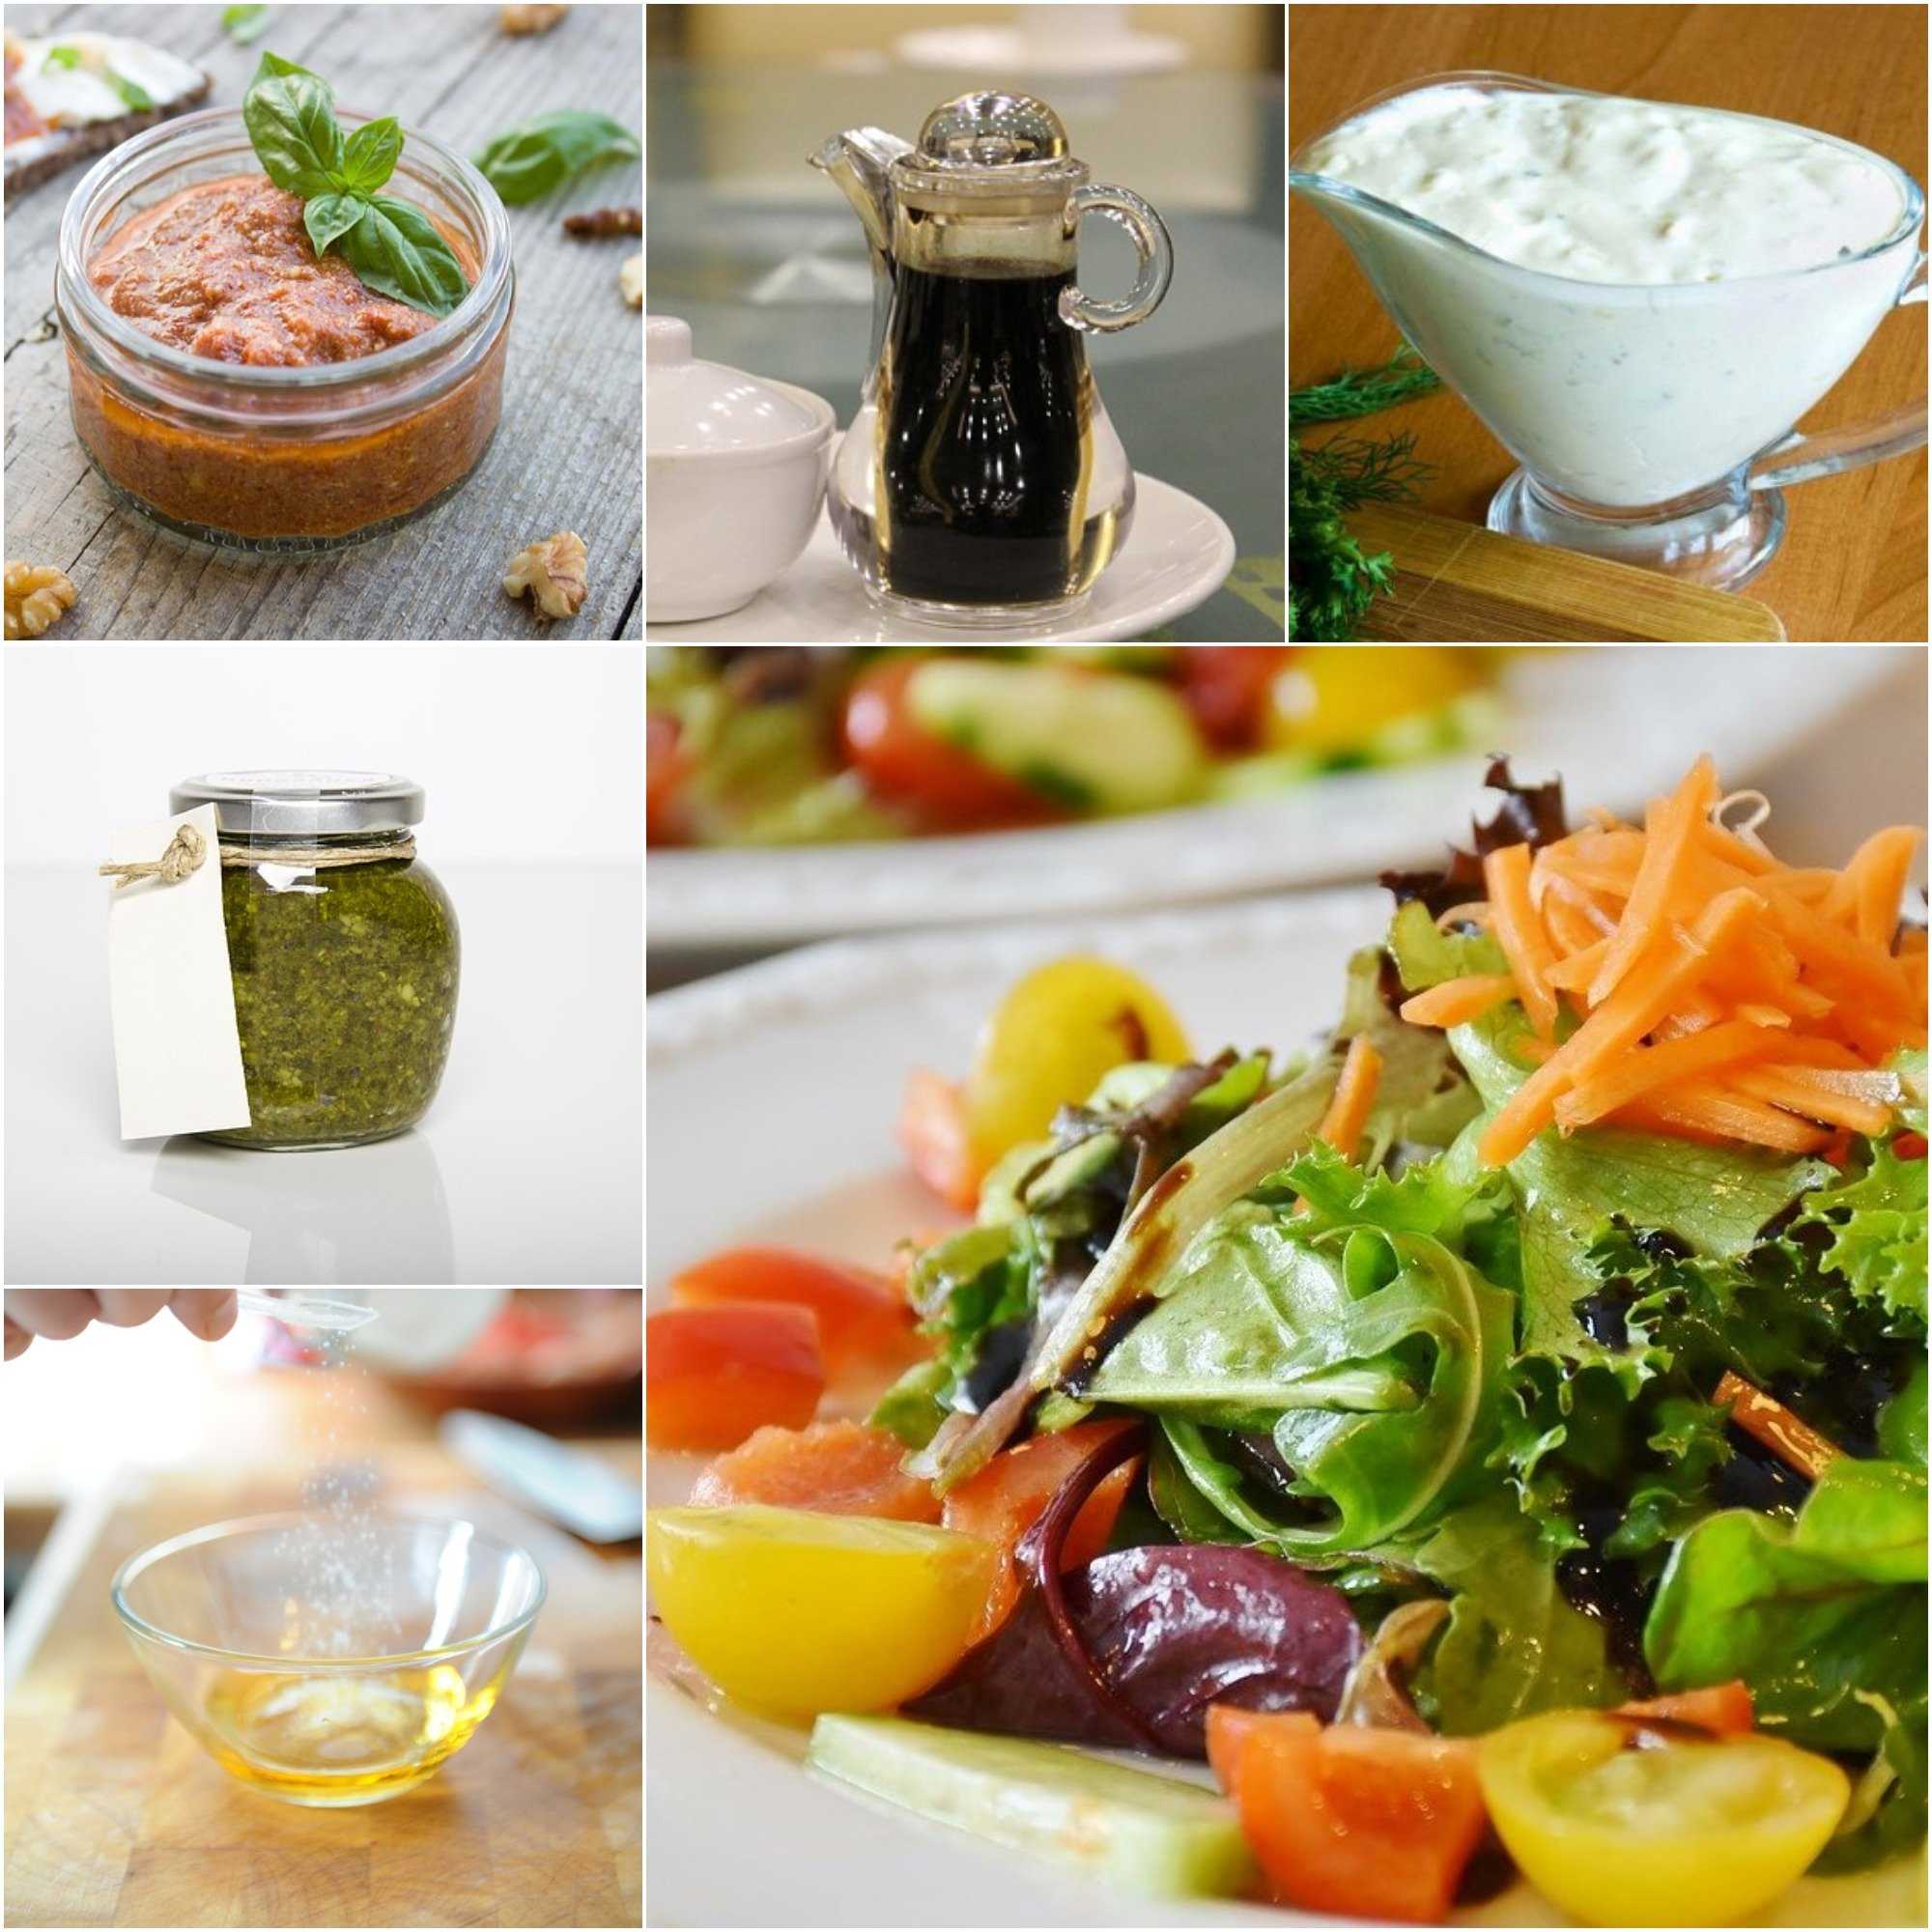 Заправка к овощному салату. Соус для салата. Салатная заправка. Соус для овощного салата. Ингредиенты для заправки овощных салатов.